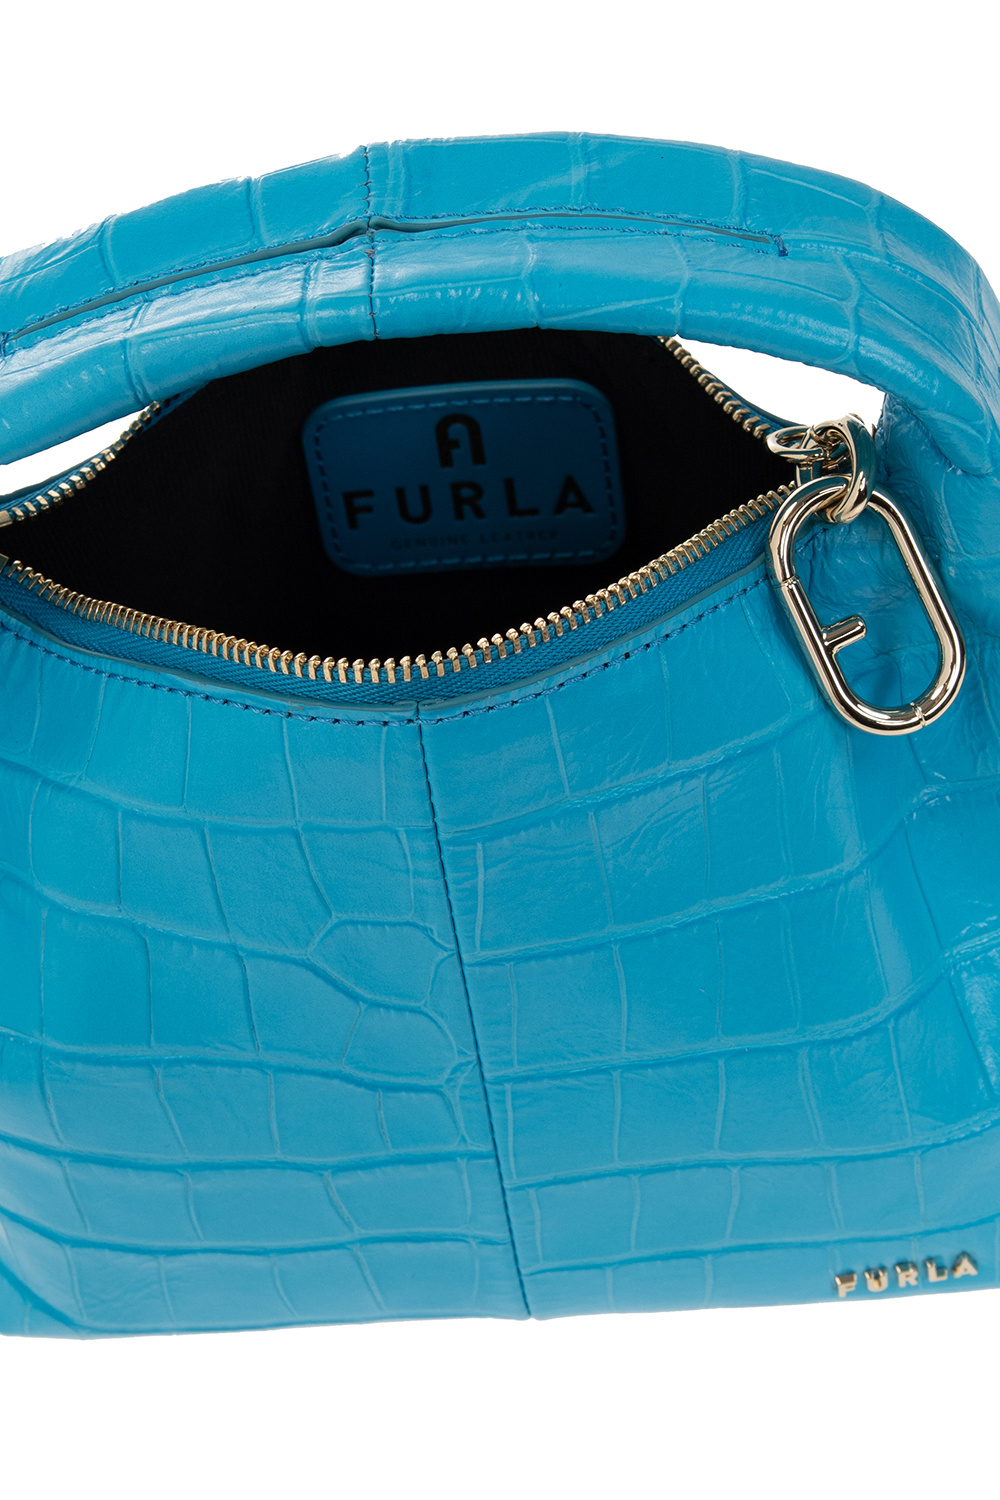 Ginger Mini' shoulder bag Furla - GenesinlifeShops Italy - Dr Woo Monster  mini bag Braun